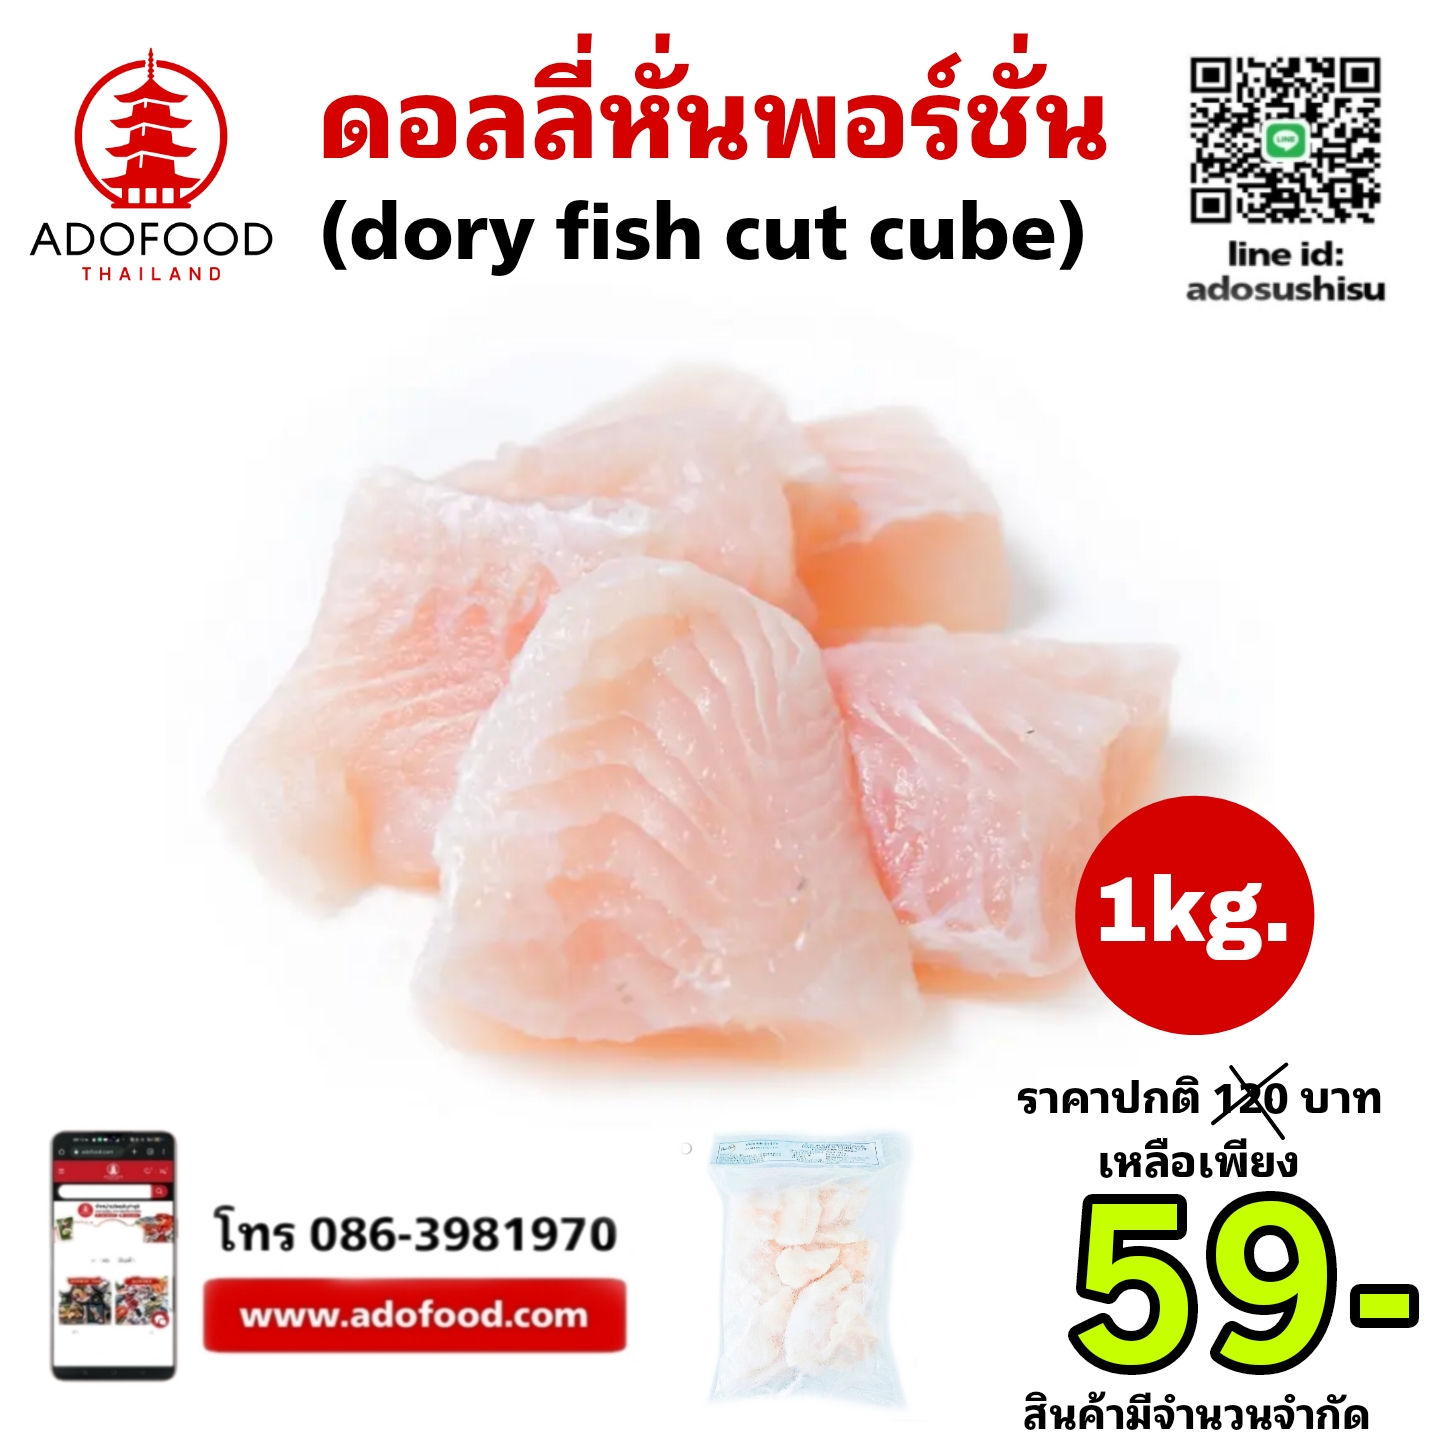 Dory fish cut cube